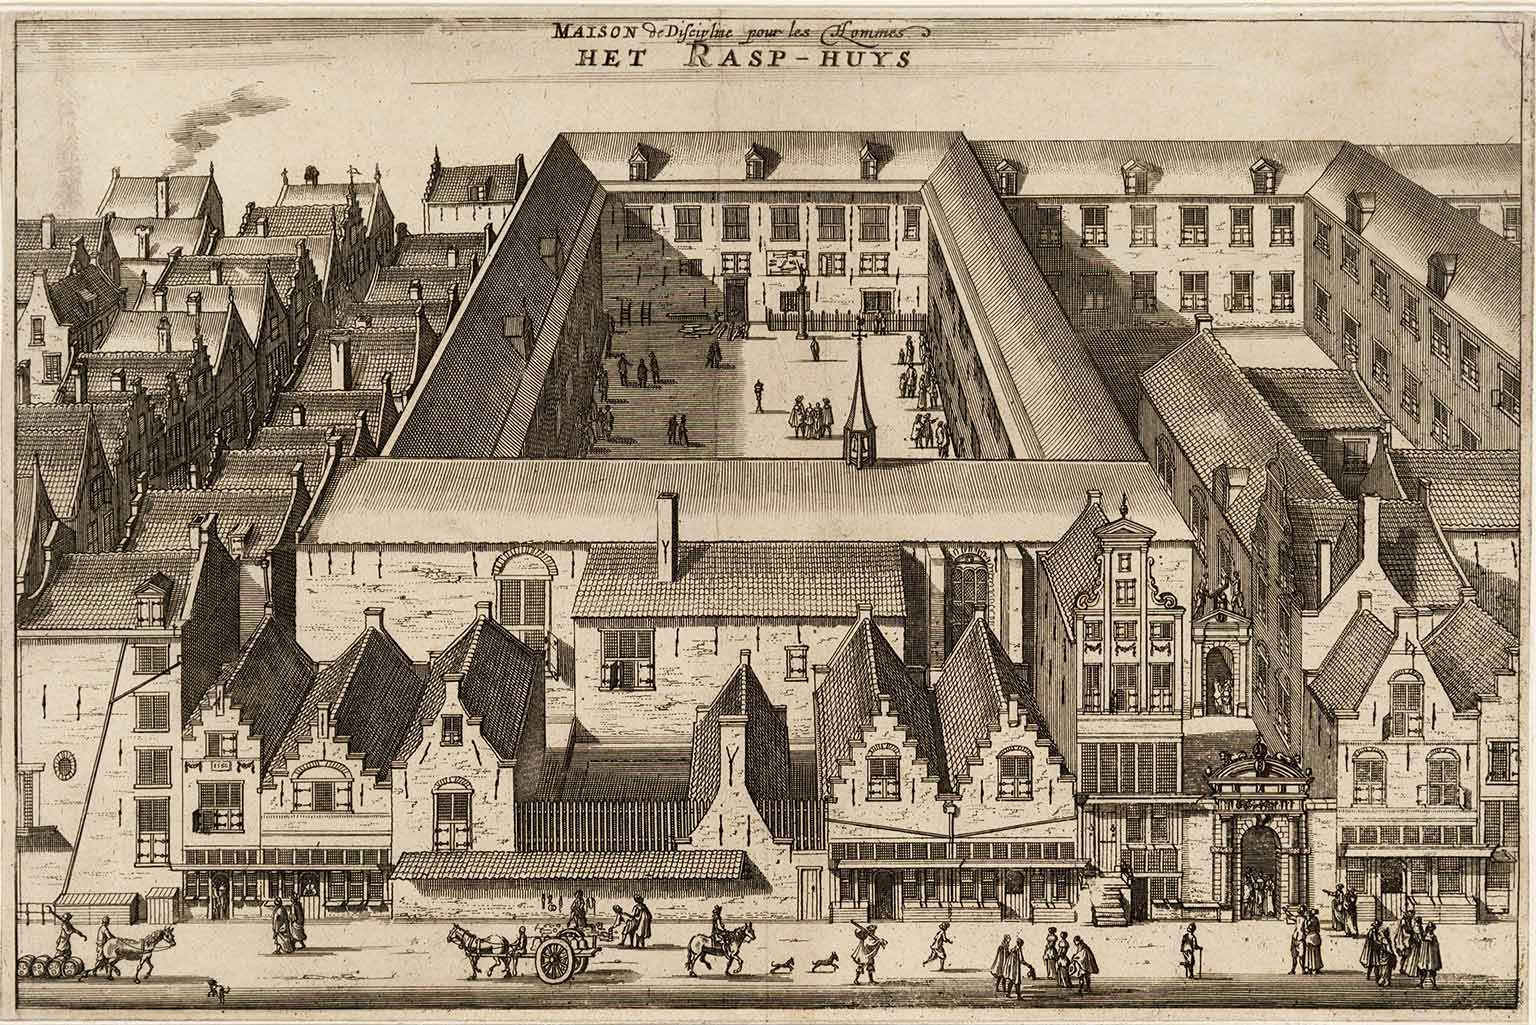 View of the Rasphuis on Heiligeweg, Amsterdam, in 1663